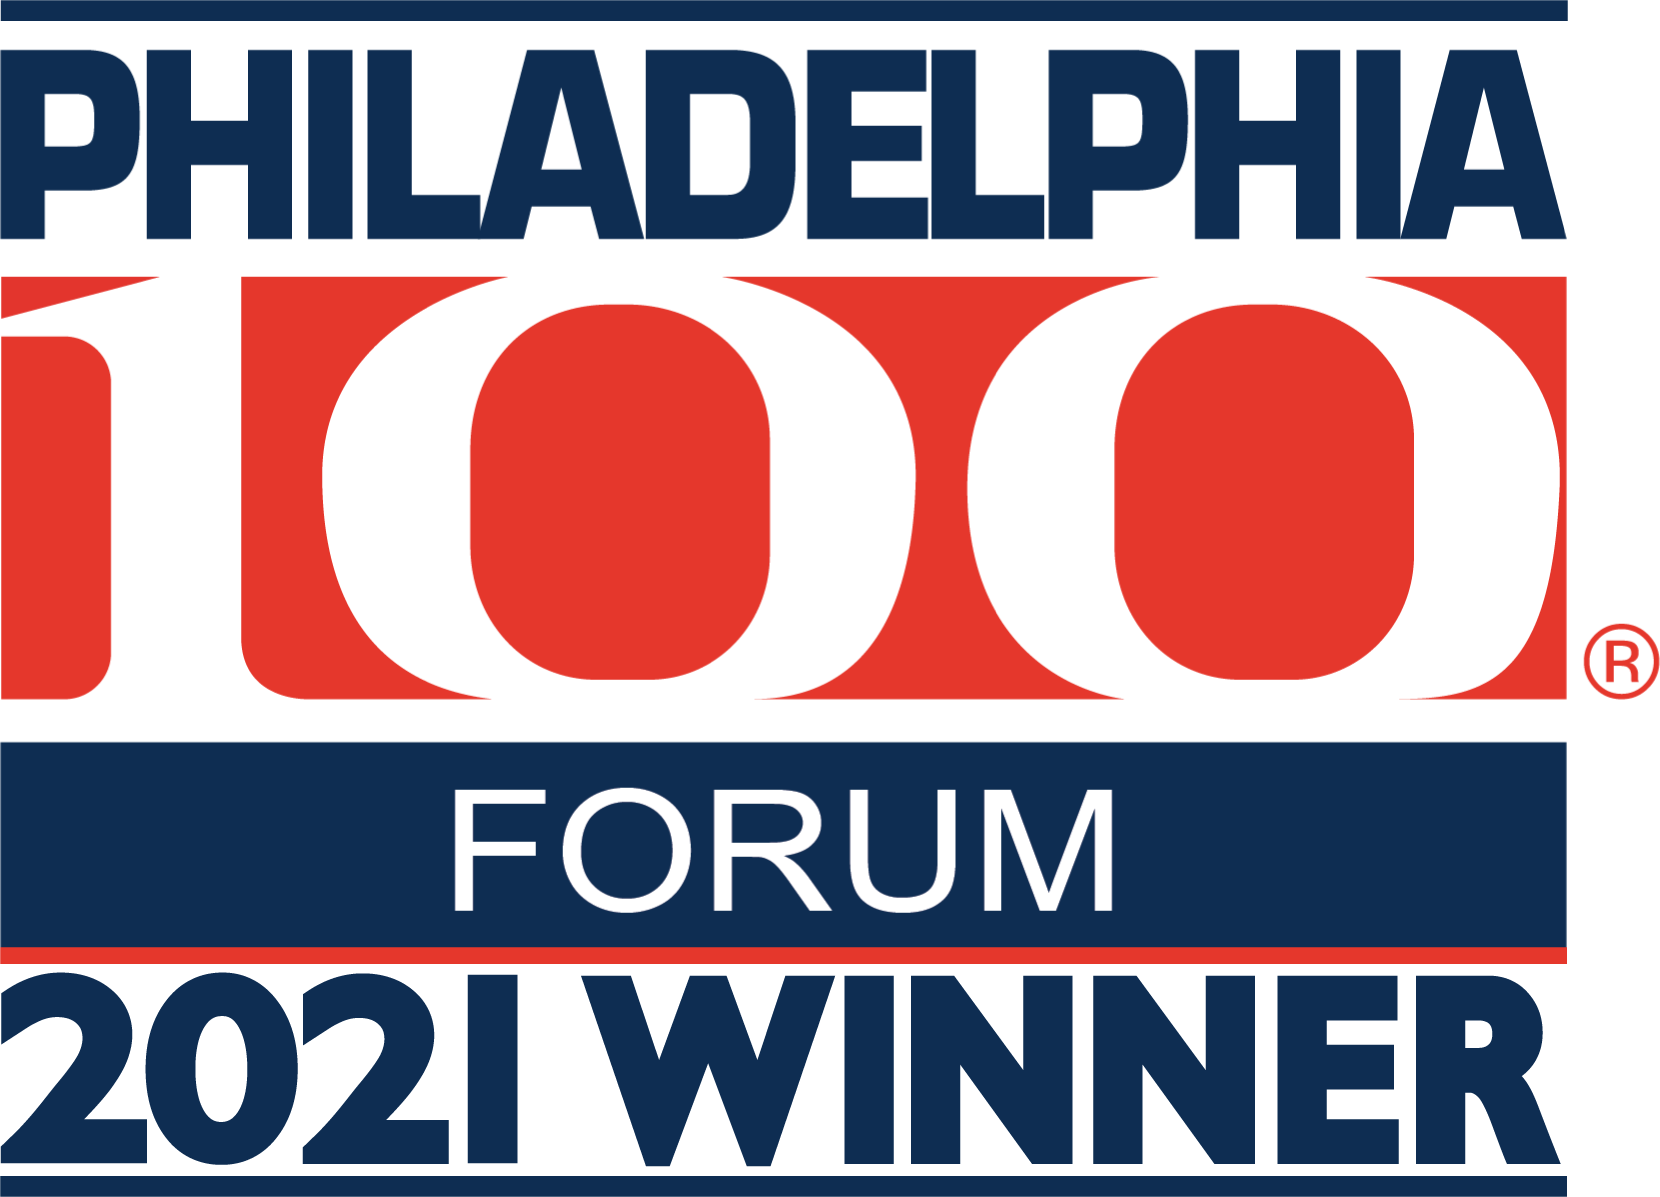 Philadelphia_100_FORUM_2021_Winner_white_bkgd_png (1)